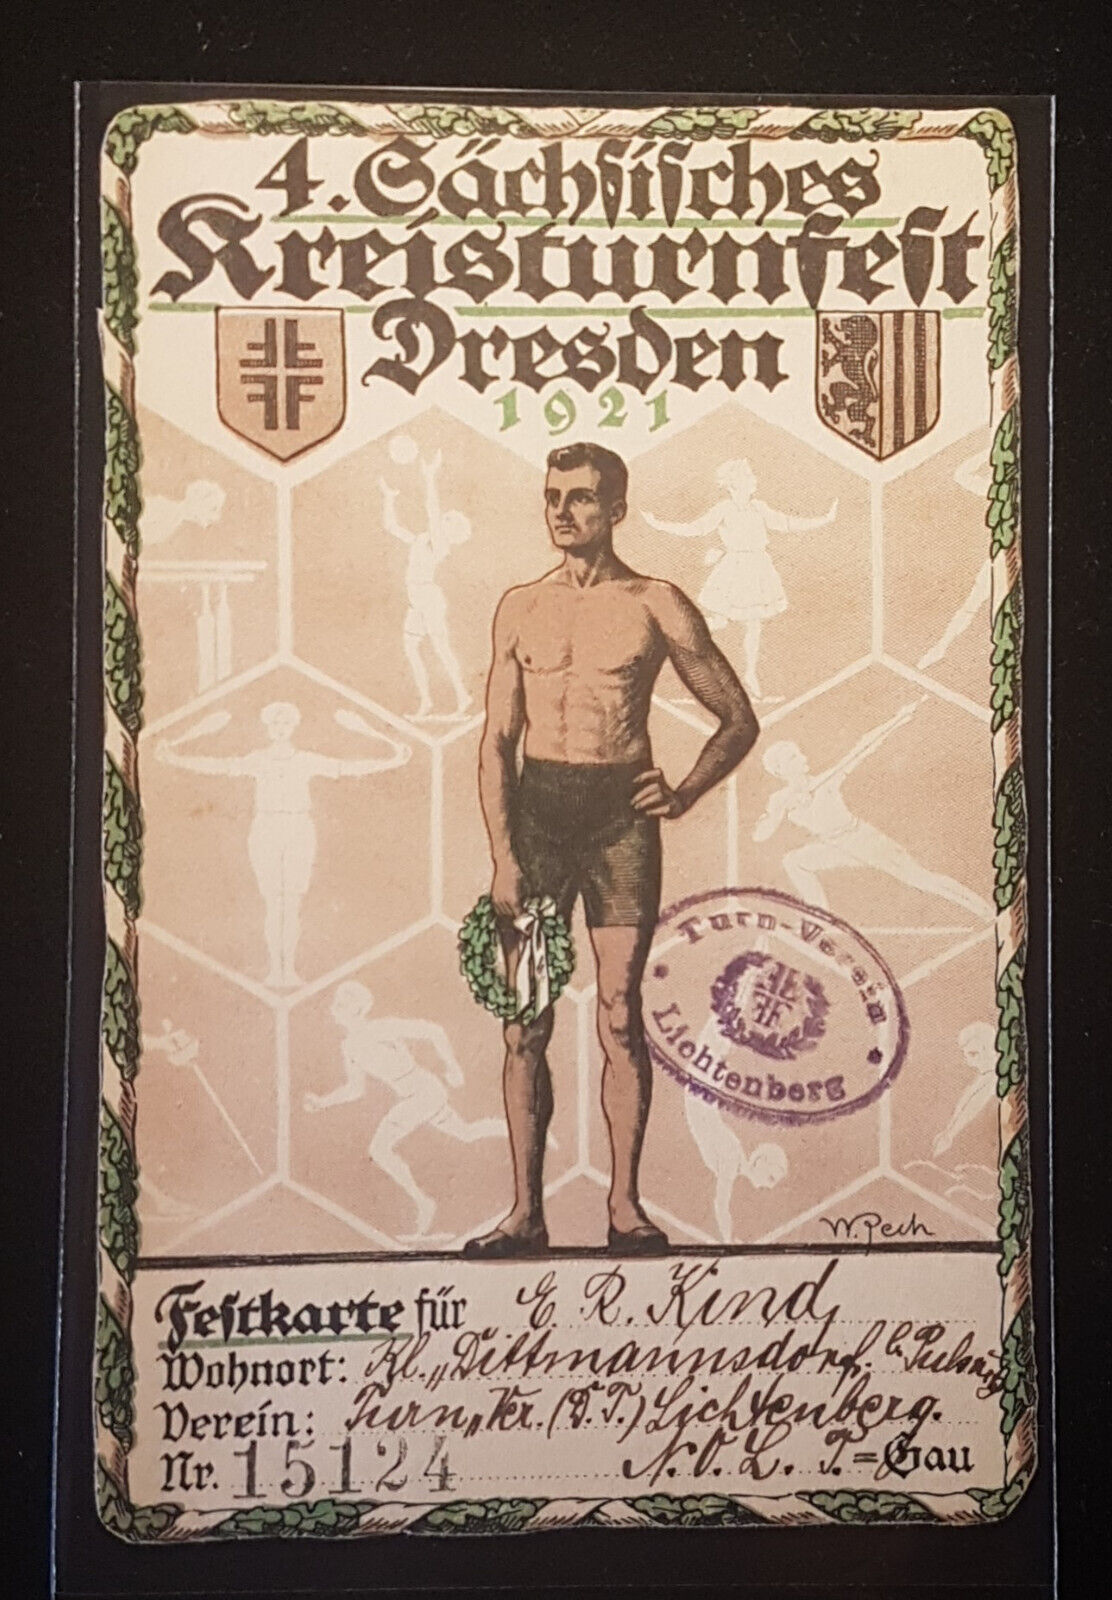 4. Sächsisches Kreisturnfest 1921  Dresden